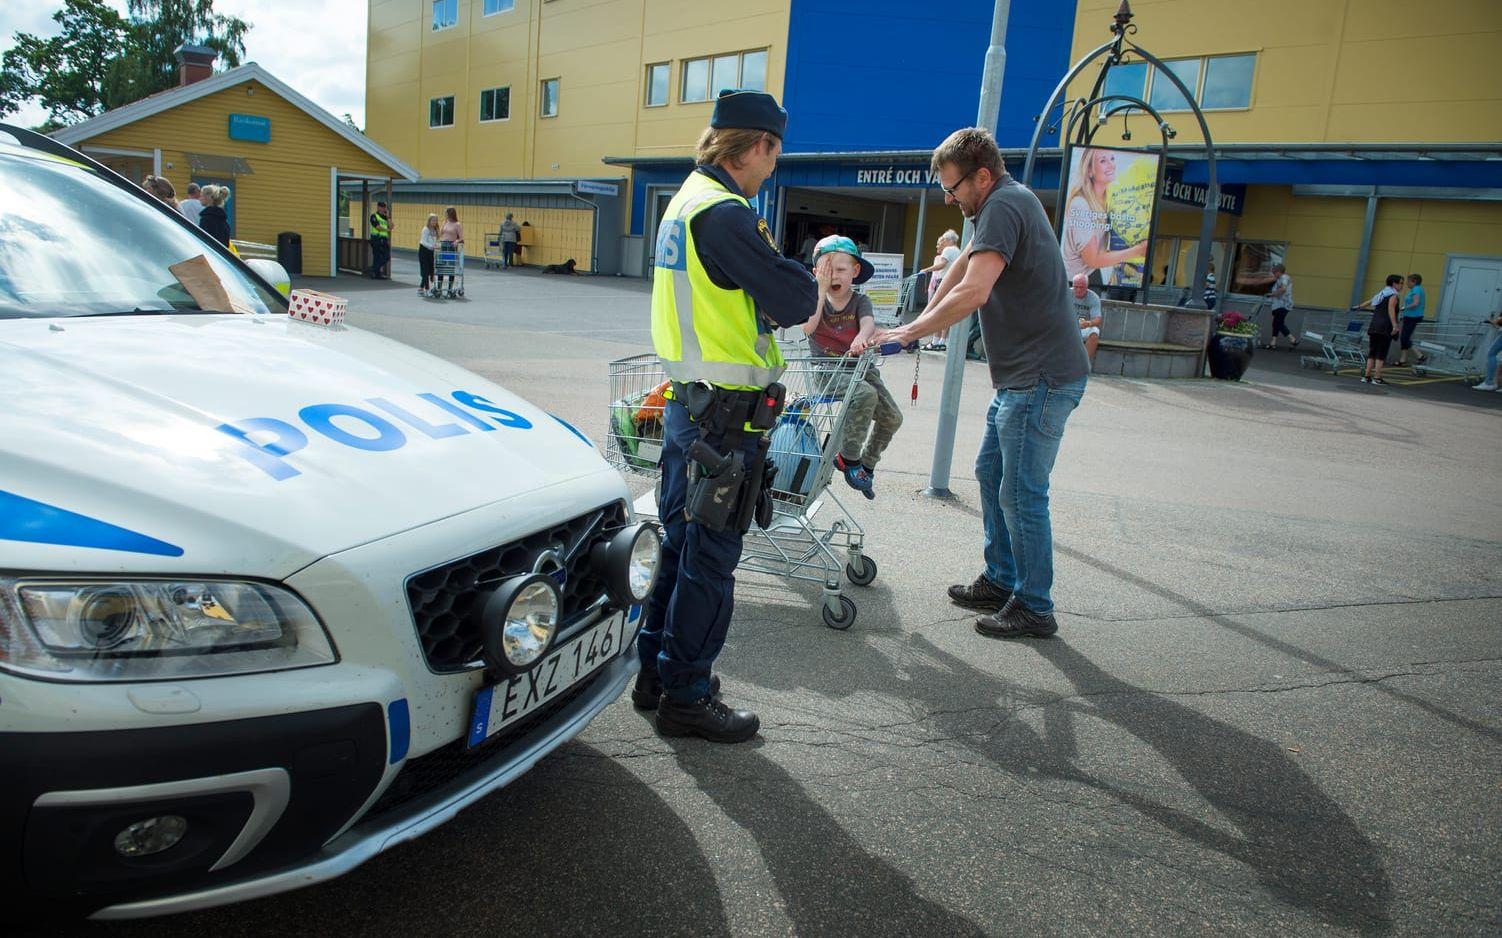 Skapa trygghet. Poliser på plats svarade på frågor från oroliga kunder. Bild: Jonatan Bylars